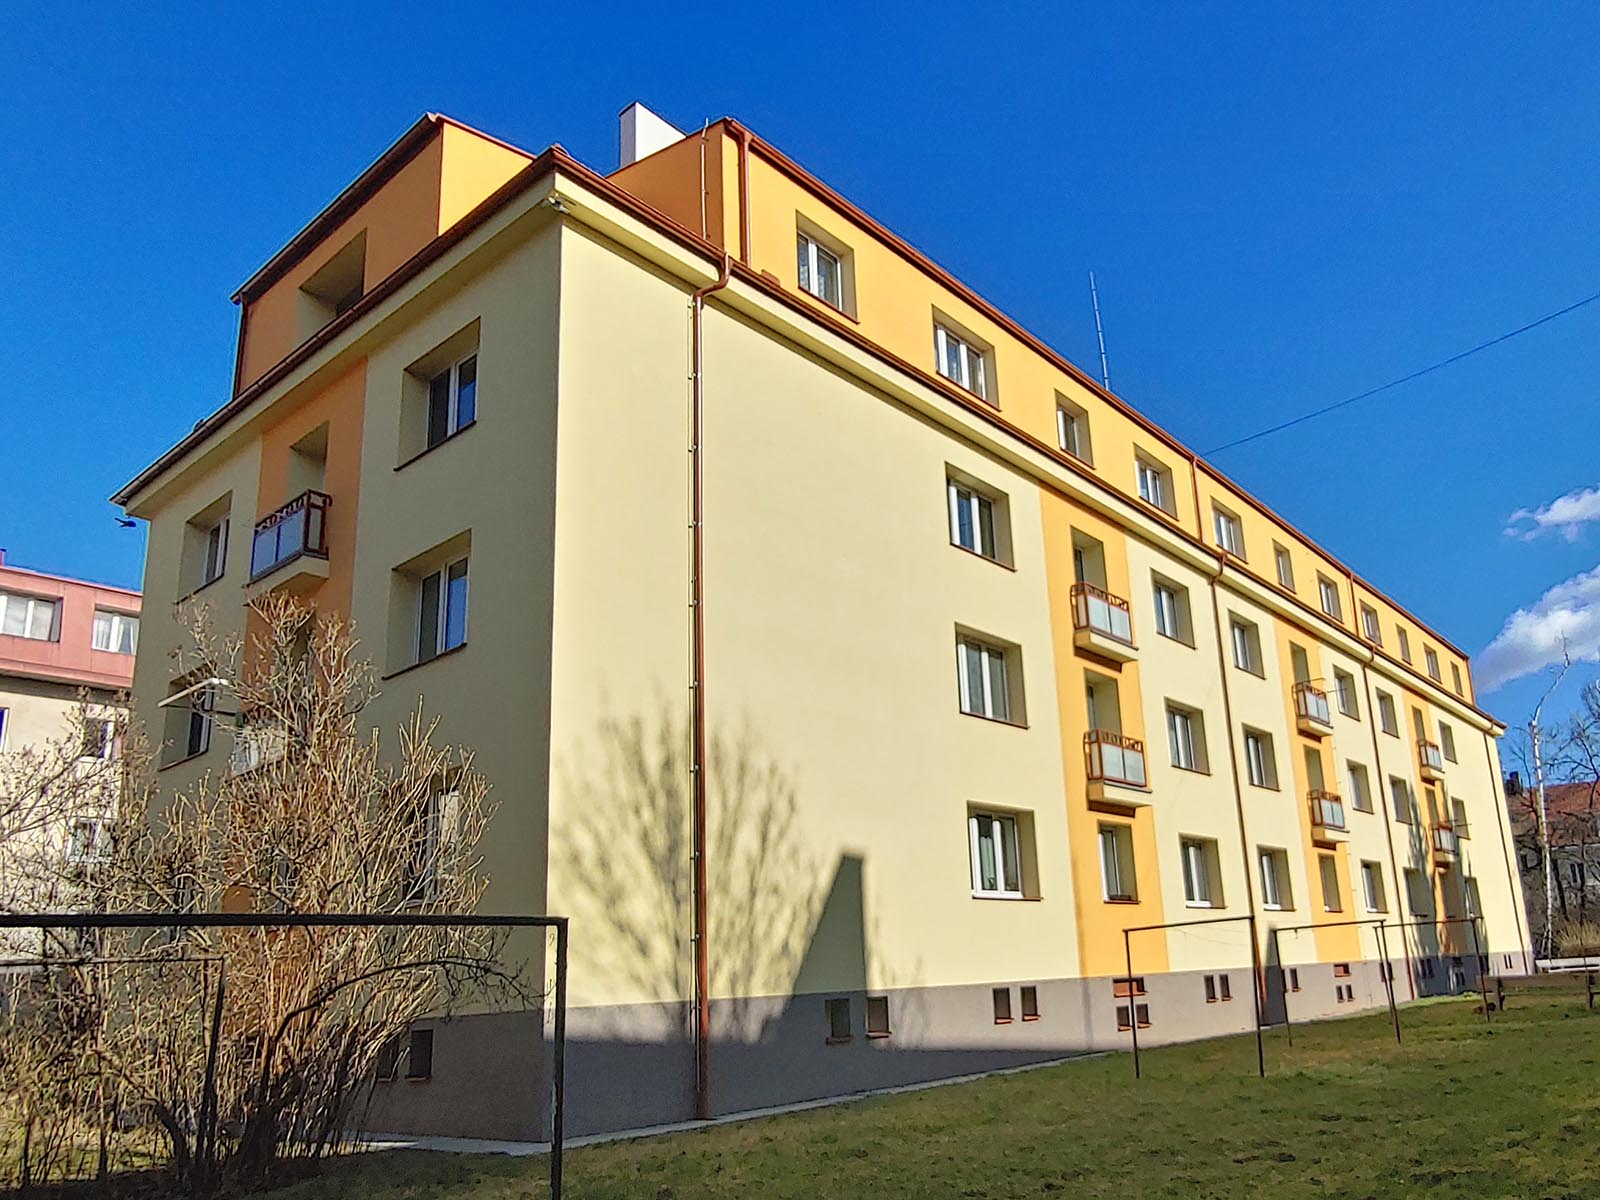 Rekonstrukce bytového domu v Praze, oprava balkonů